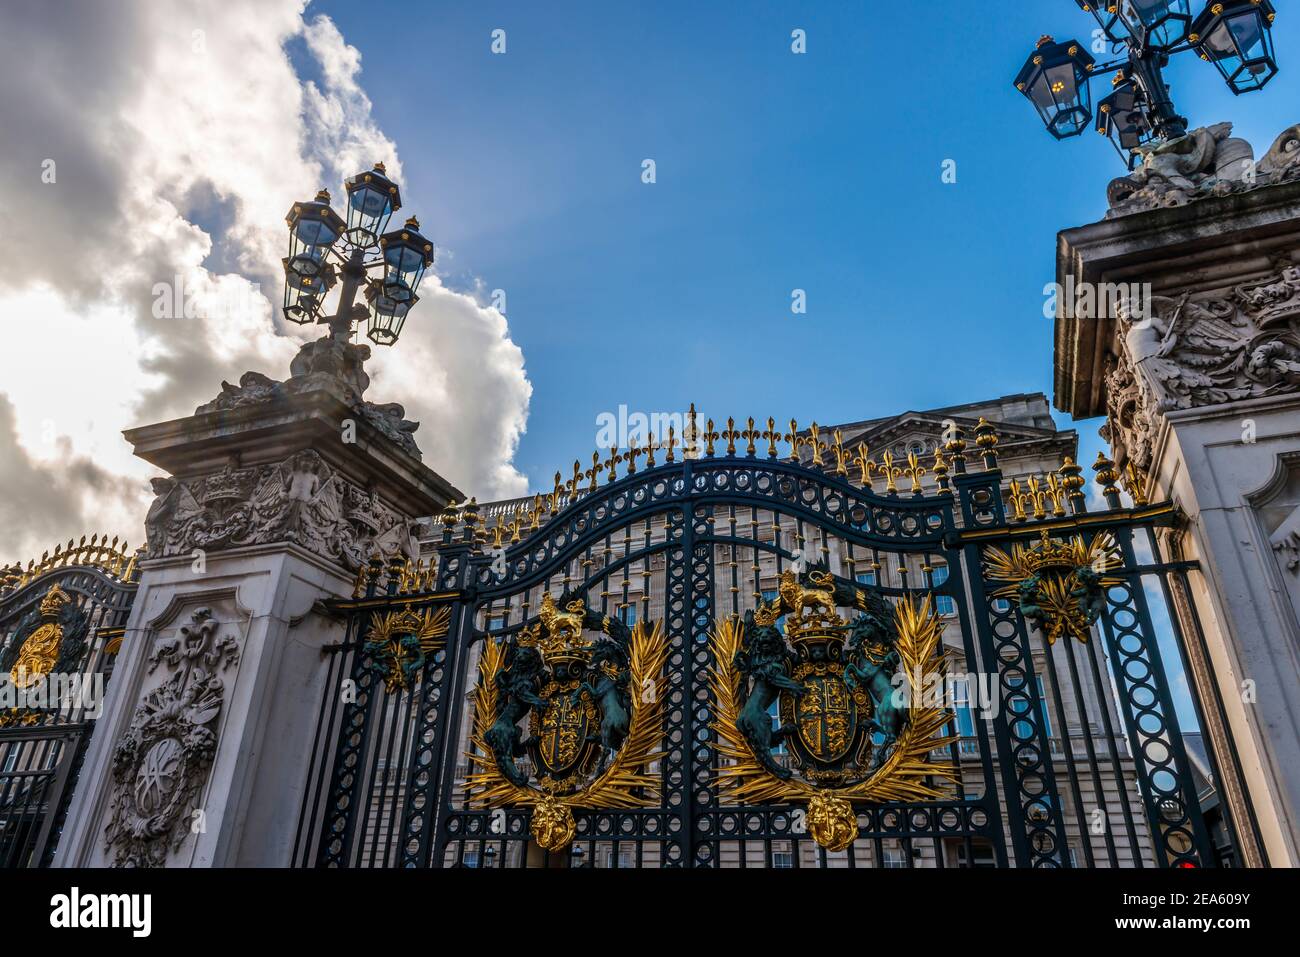 The main entrance gates of Buckingham Royal Palace in London, England, UK Stock Photo